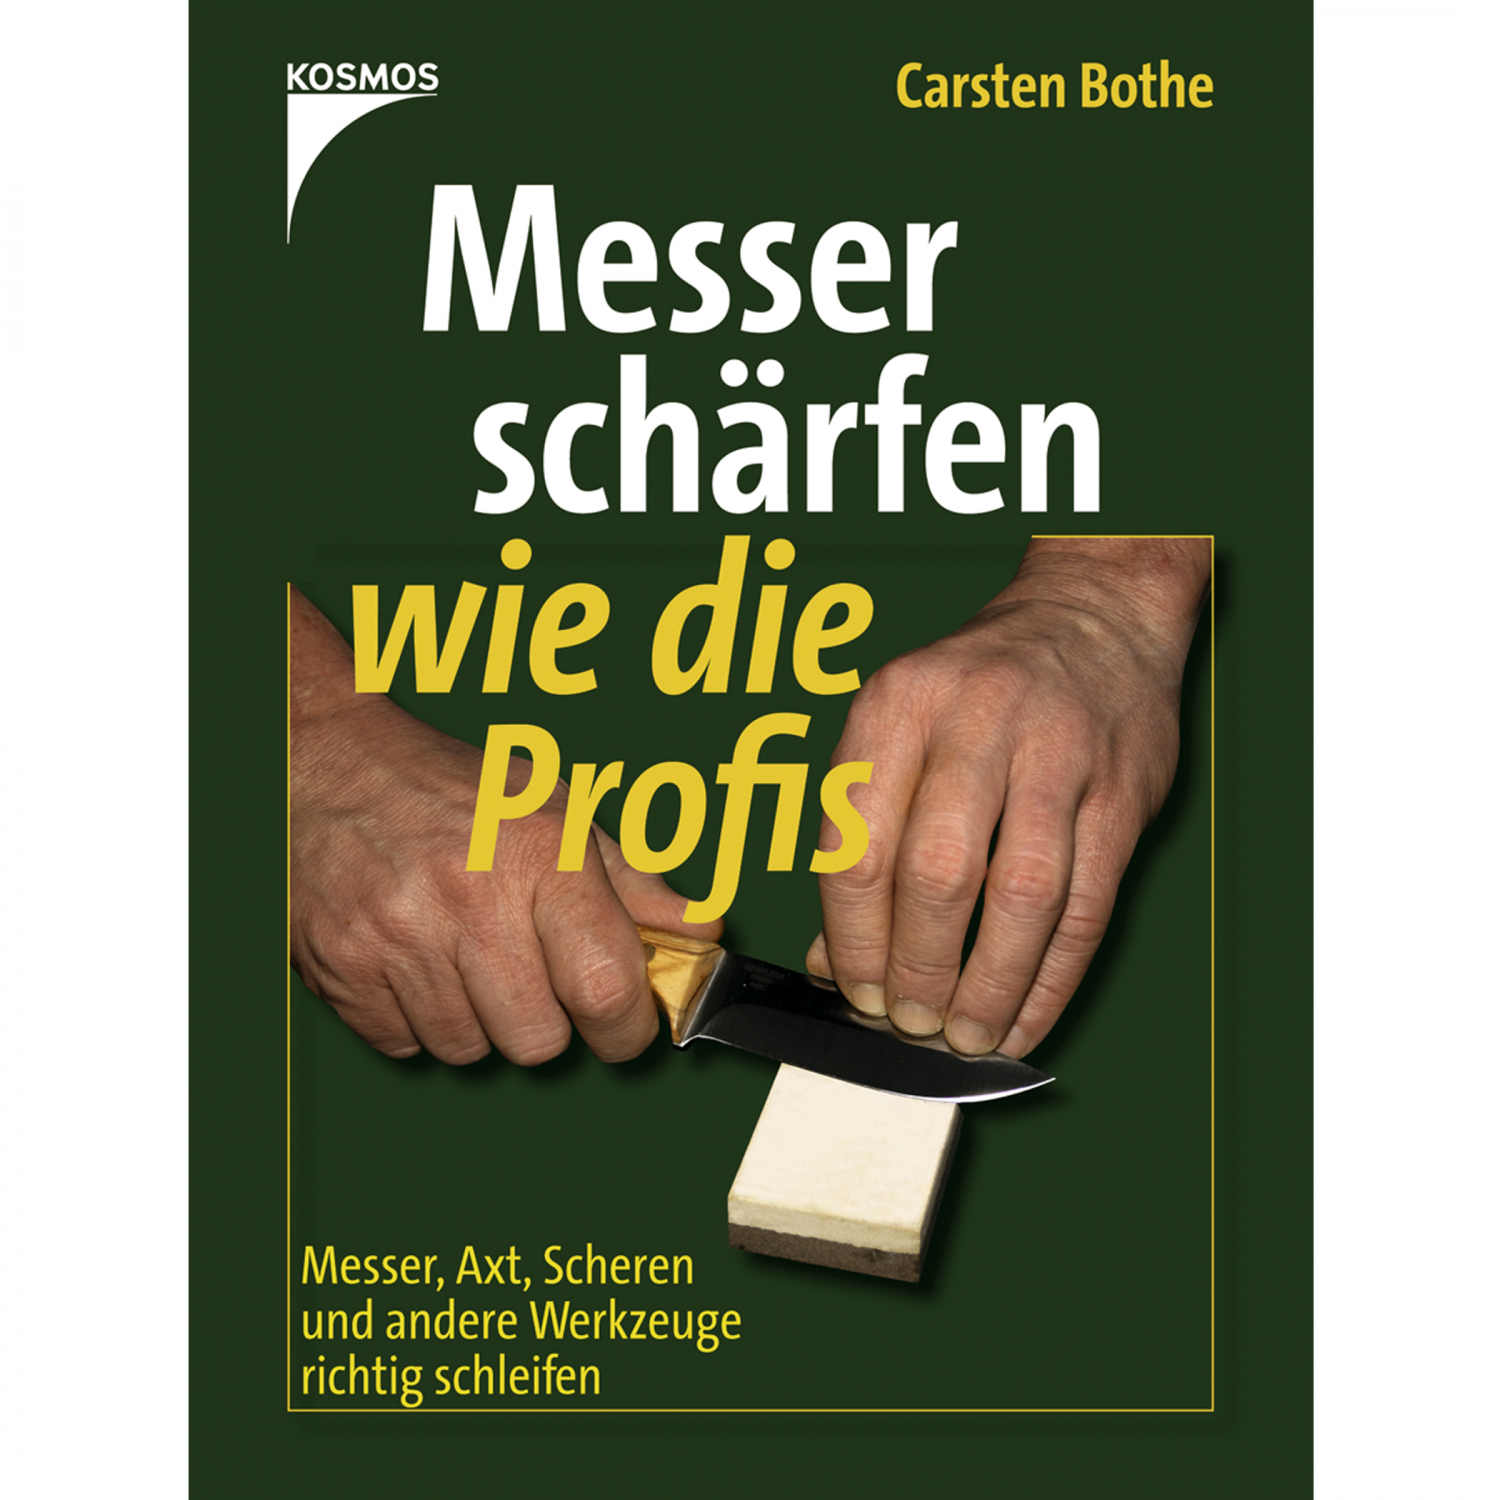 Book: Messer schärfen wie die Profis by Carsten Bothe 